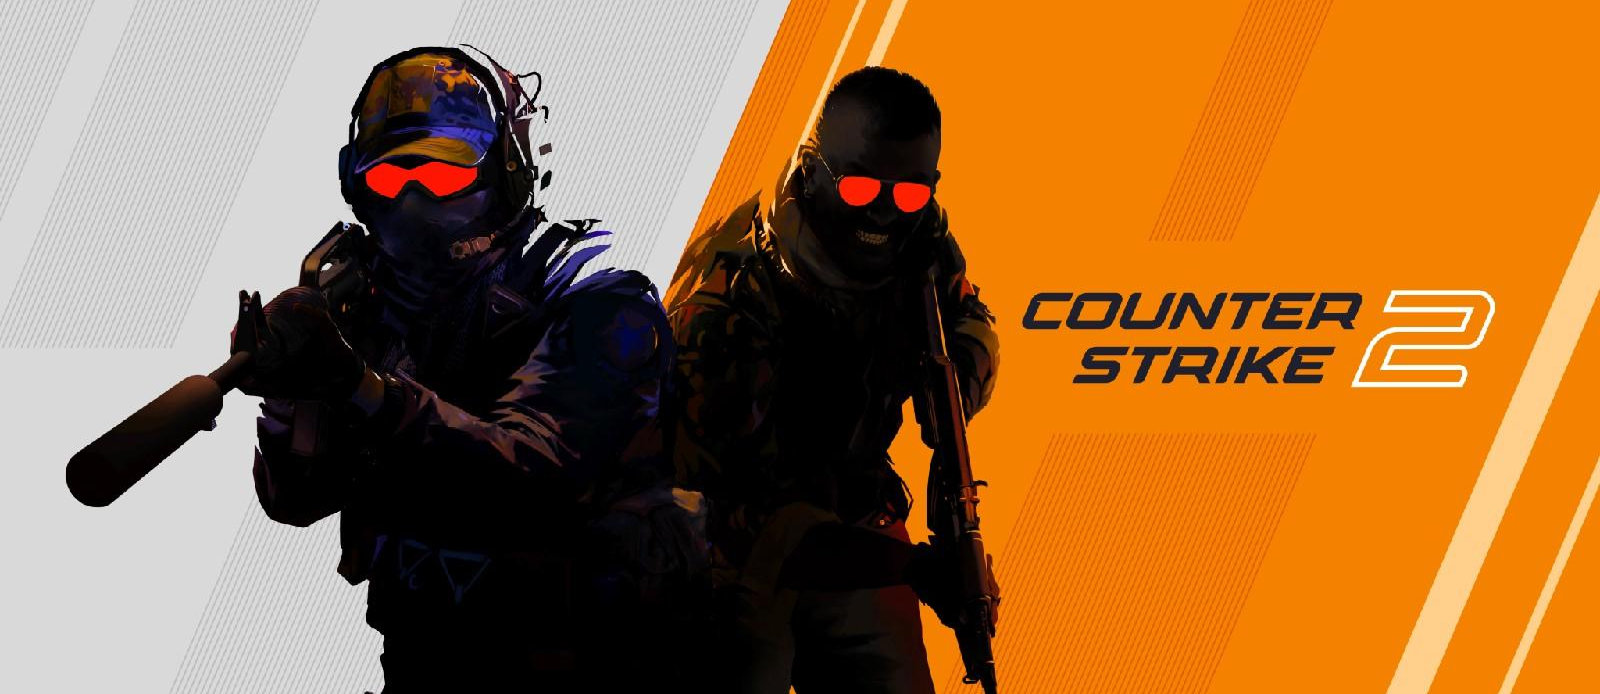 Cấu hình chơi tốt Counter Strike 2 bản chính thức 